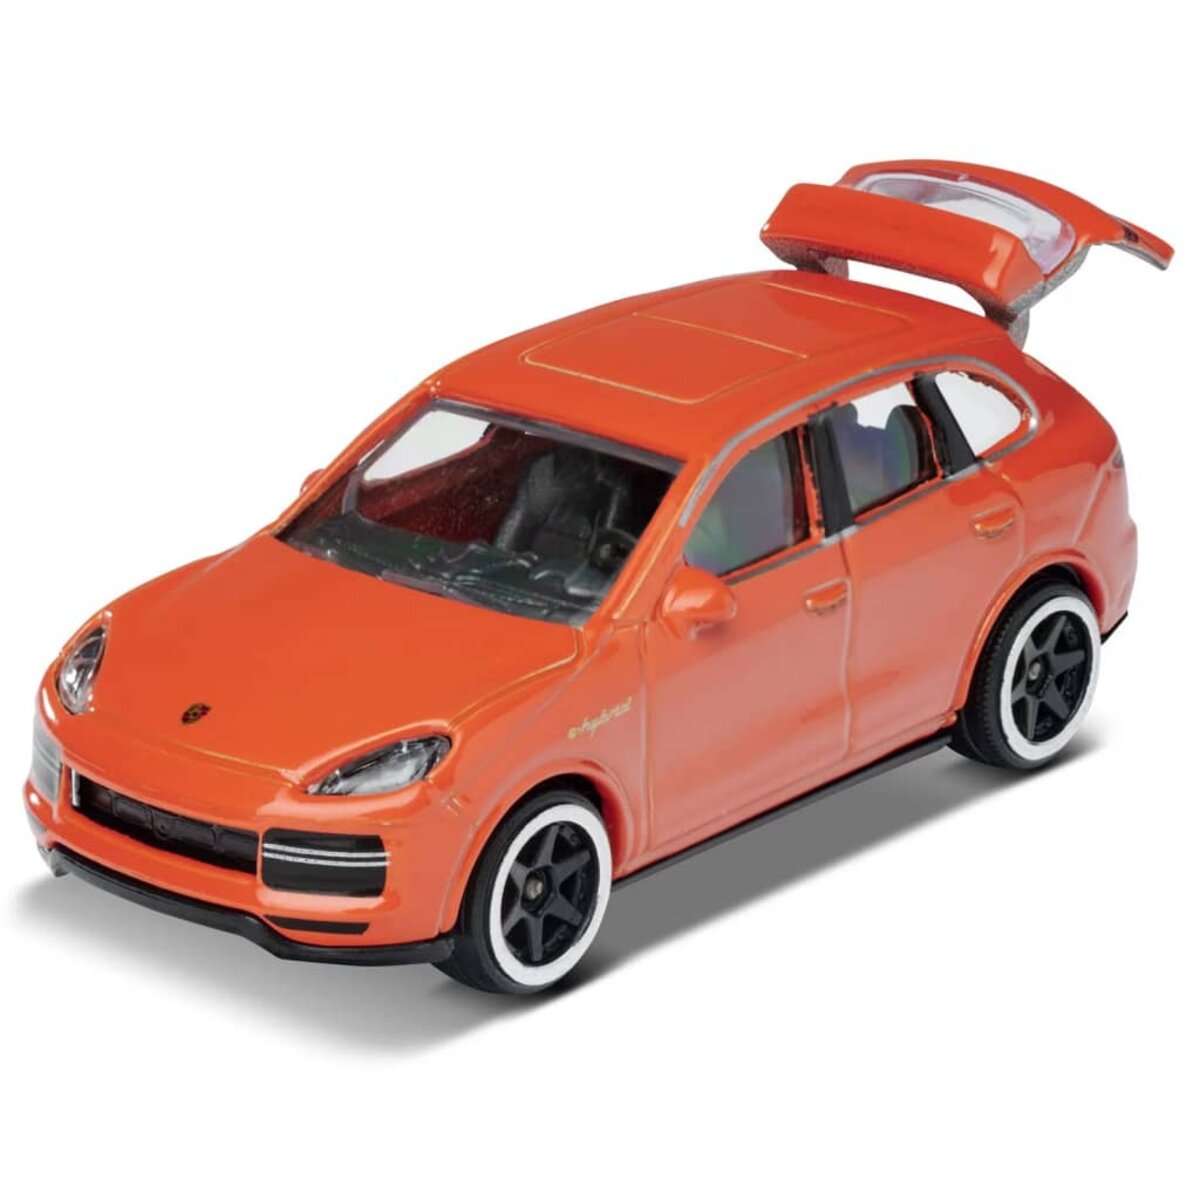 Majorette - Porsche edition - Le coin du jouet